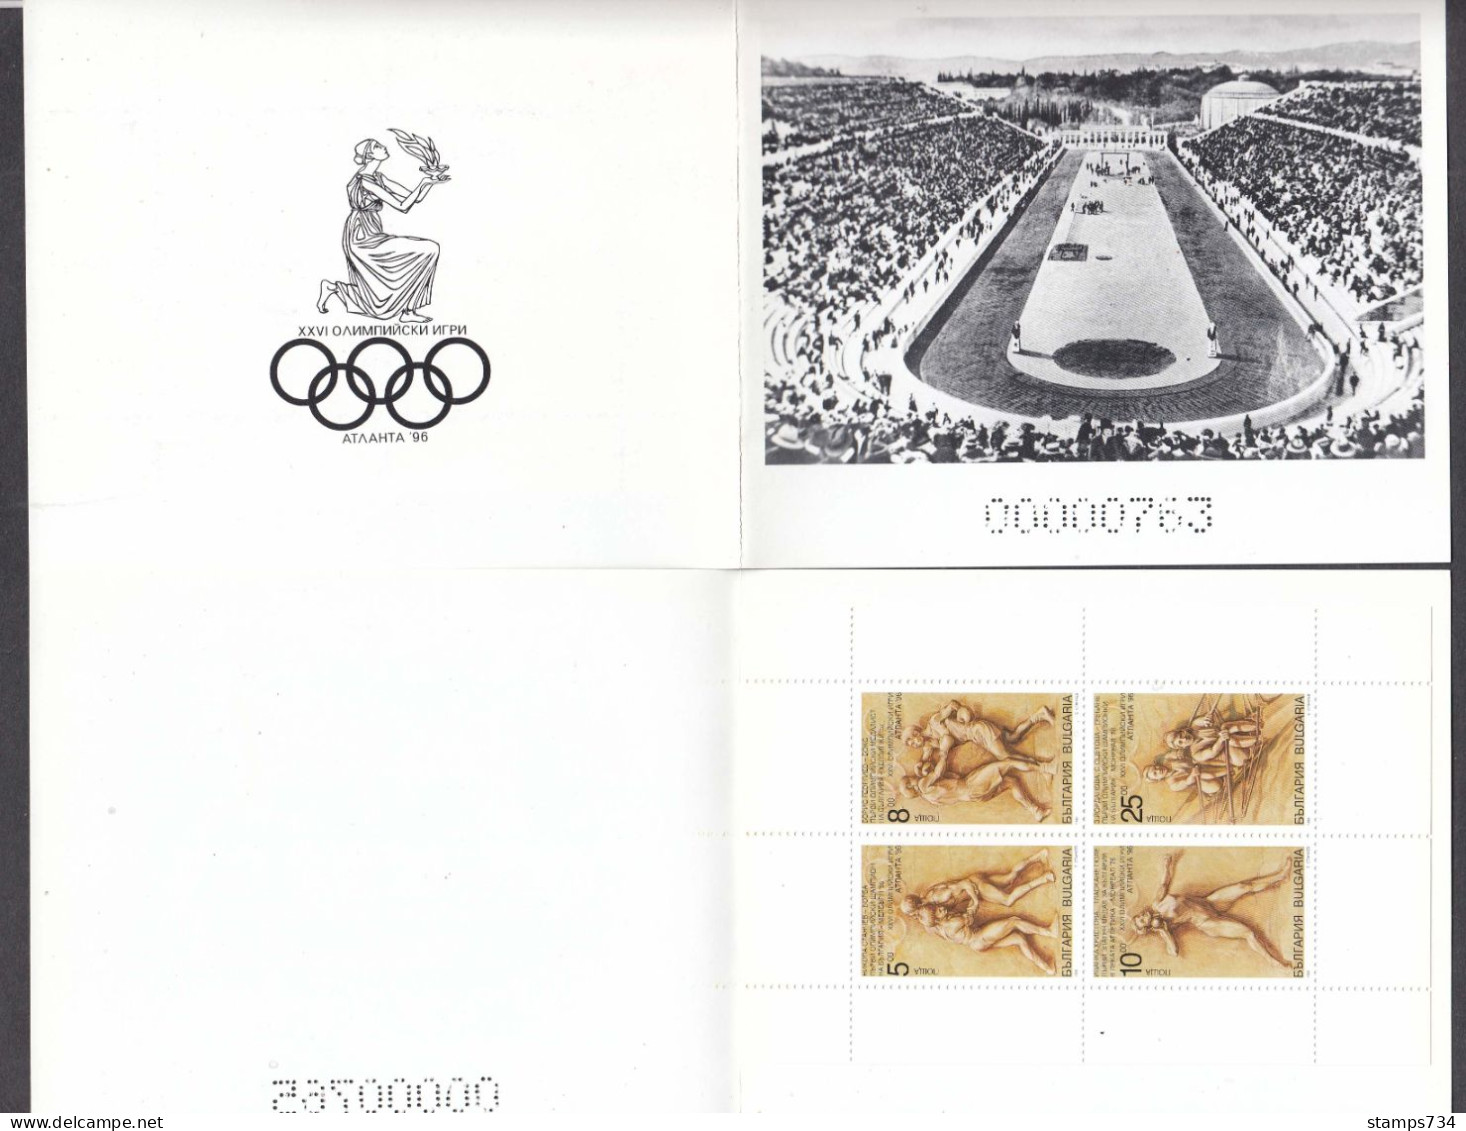 Bulgaria 1996 - Olympic Games, Atlanta, Mi-Nr. 4227/30 In Booklet, MNH** - Sommer 1996: Atlanta